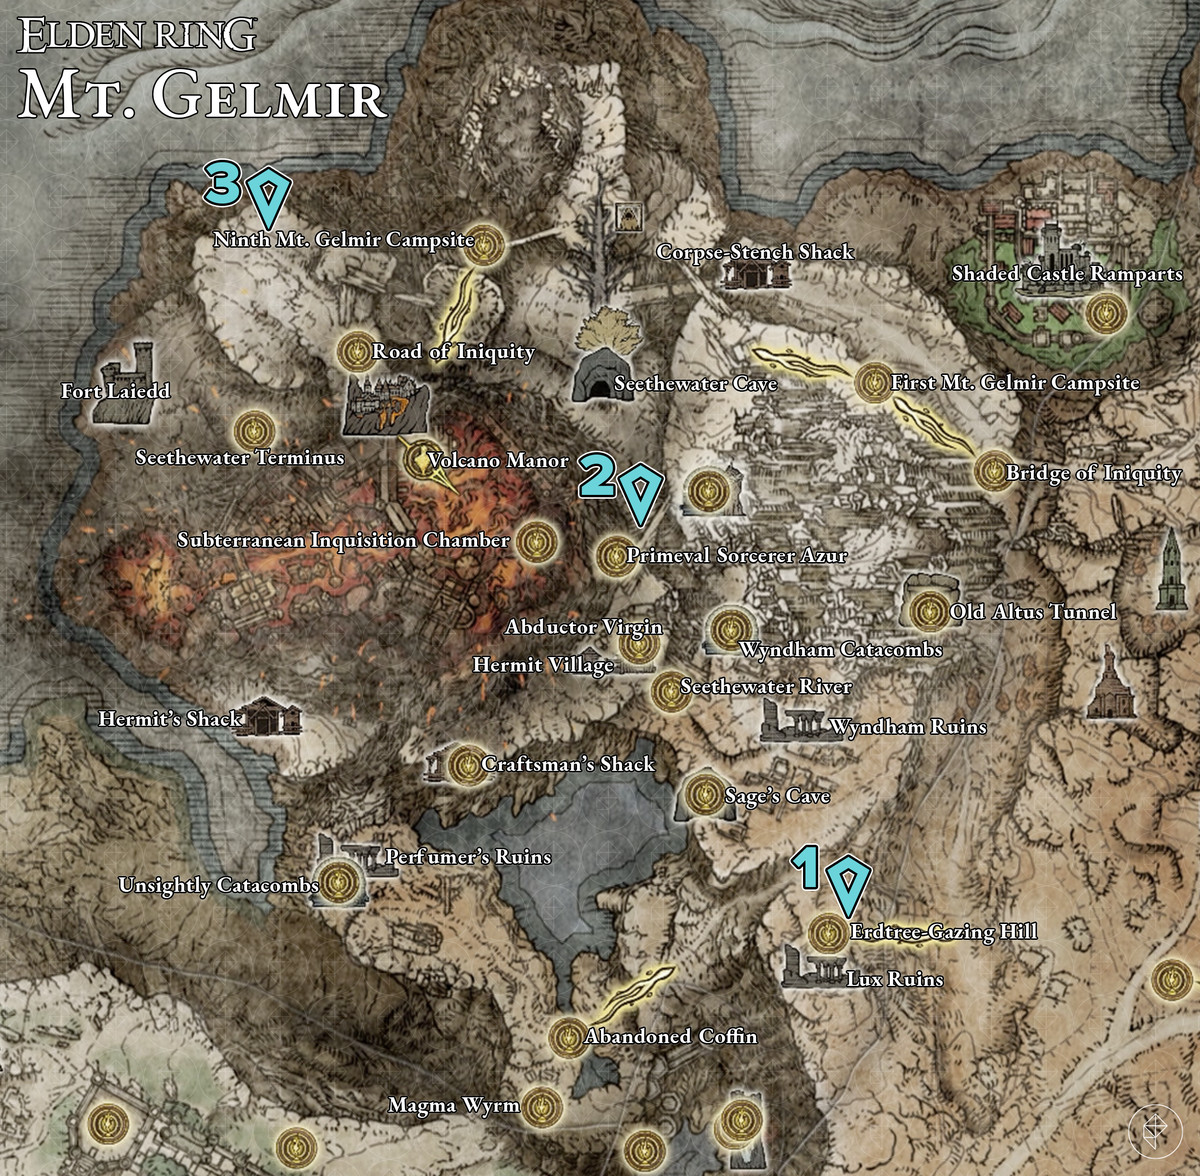 Map showing Elden Ring Mt. Gelmir Golden Seed locations